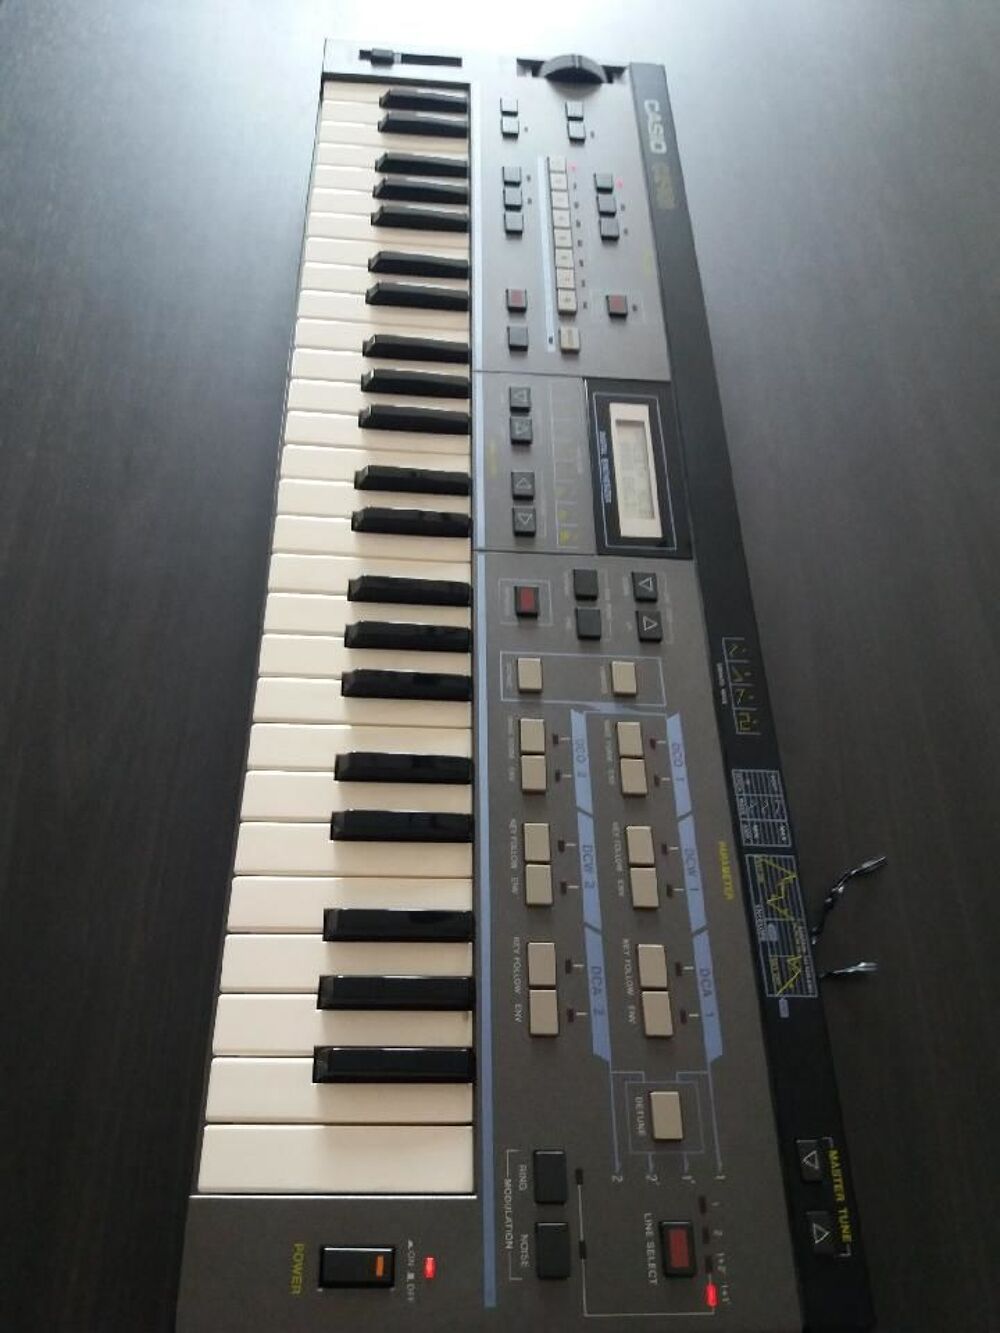 clavier num&eacute;rique CZ -101 casio Instruments de musique